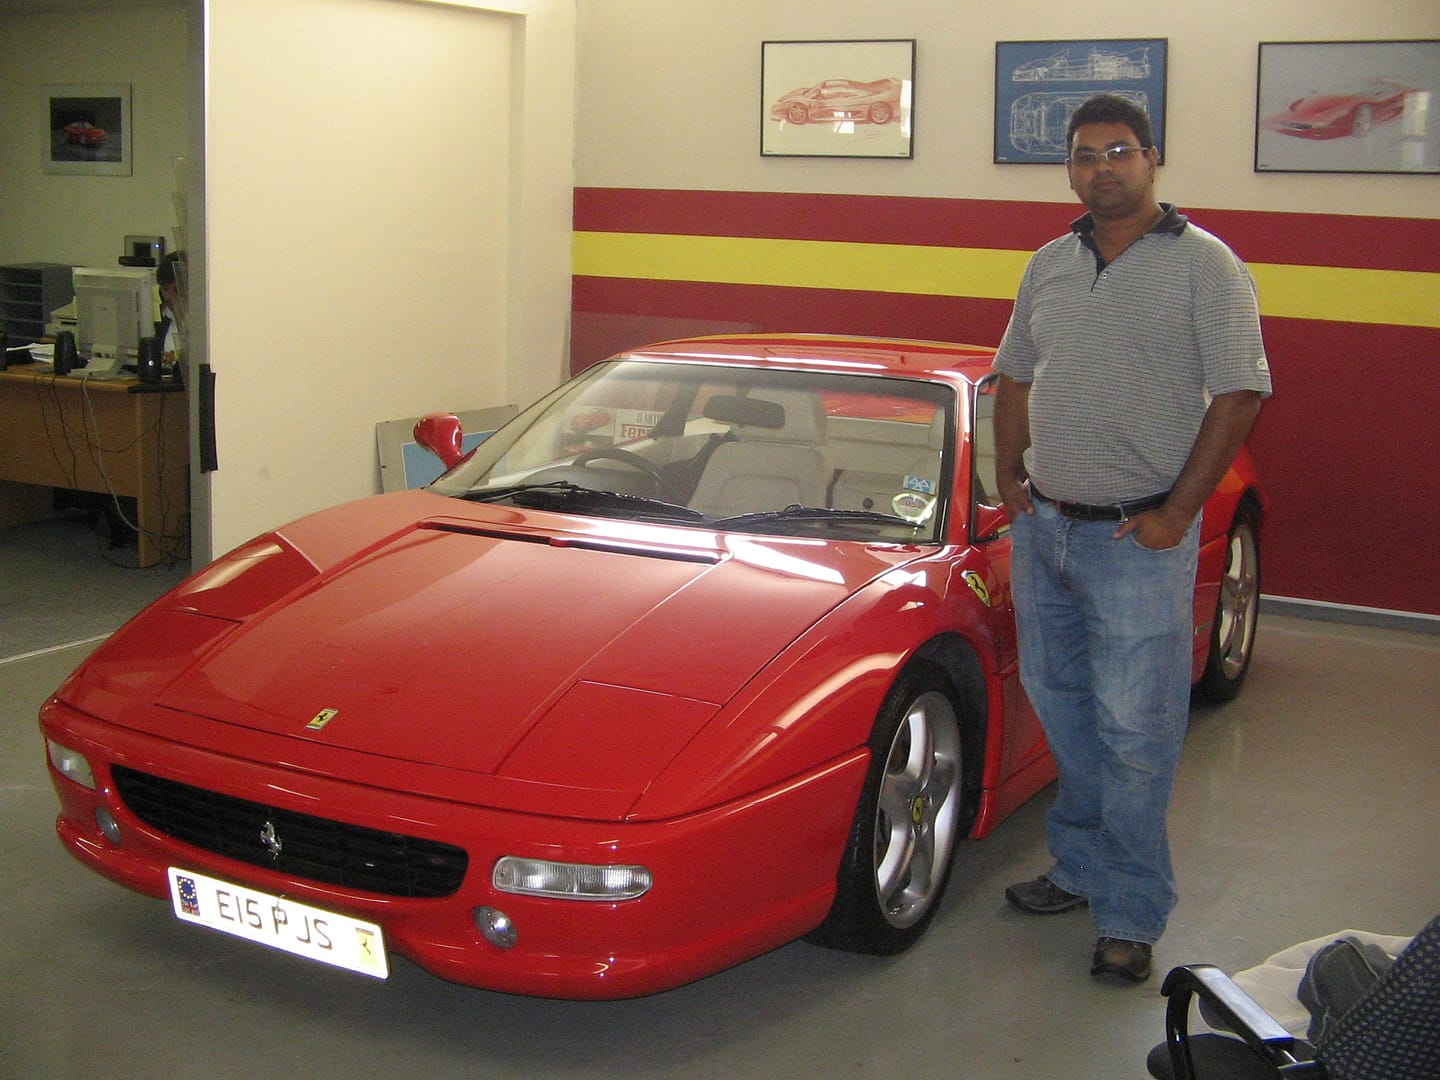 Ferrari F355 F1 detailed by Protouch Car Care in 2007 or 2008 for Viglietti Motors, then sole importer for Ferrari